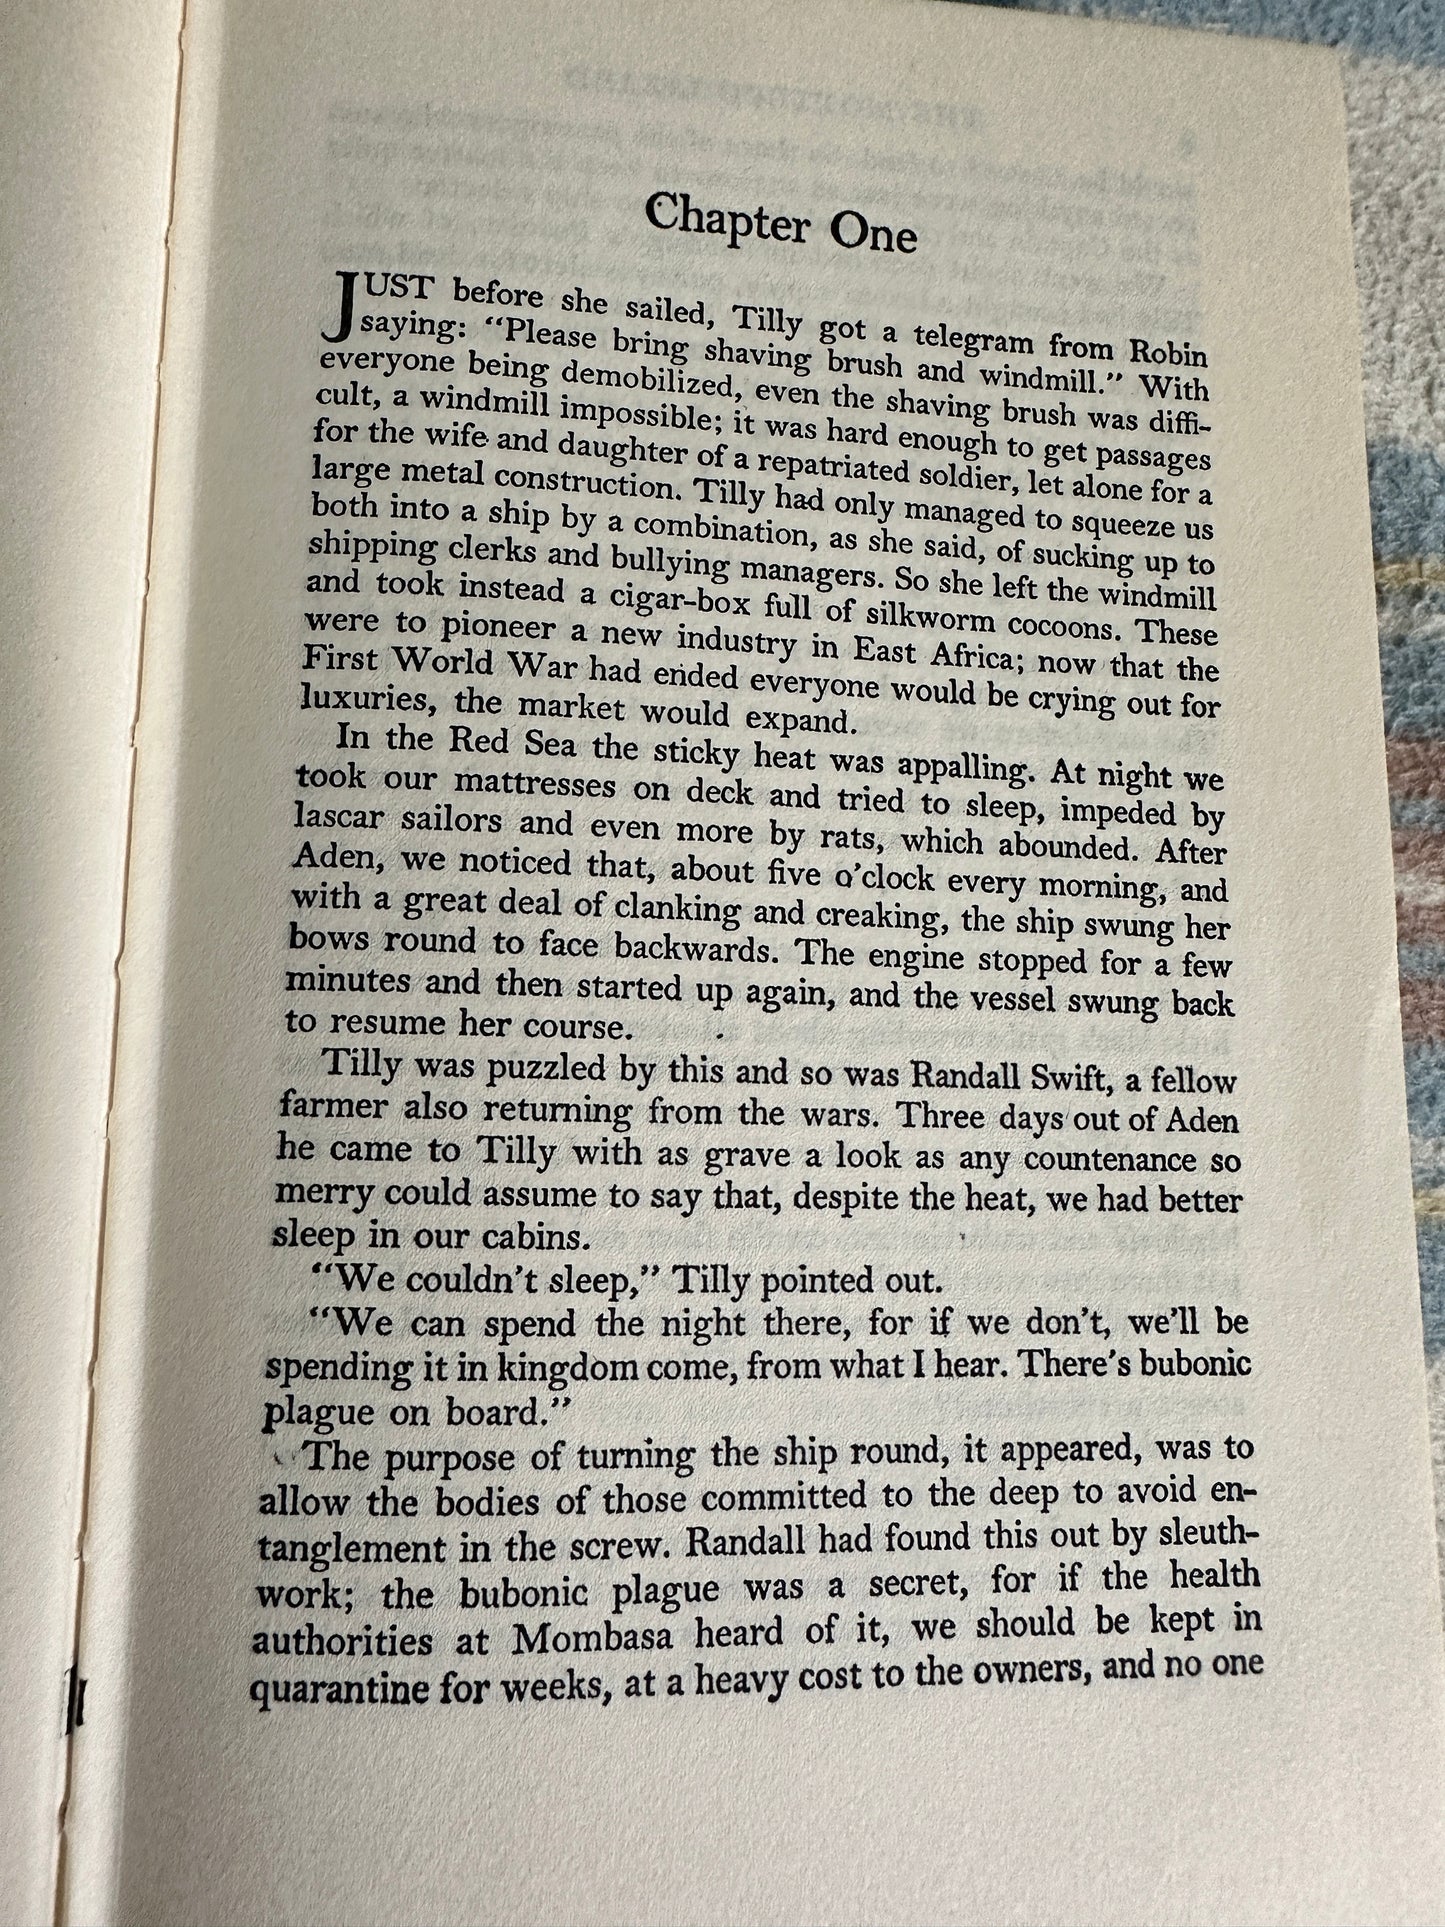 1964*1st* The Mottled Lizard - Elspeth Huxley(Reprint Society World Books)